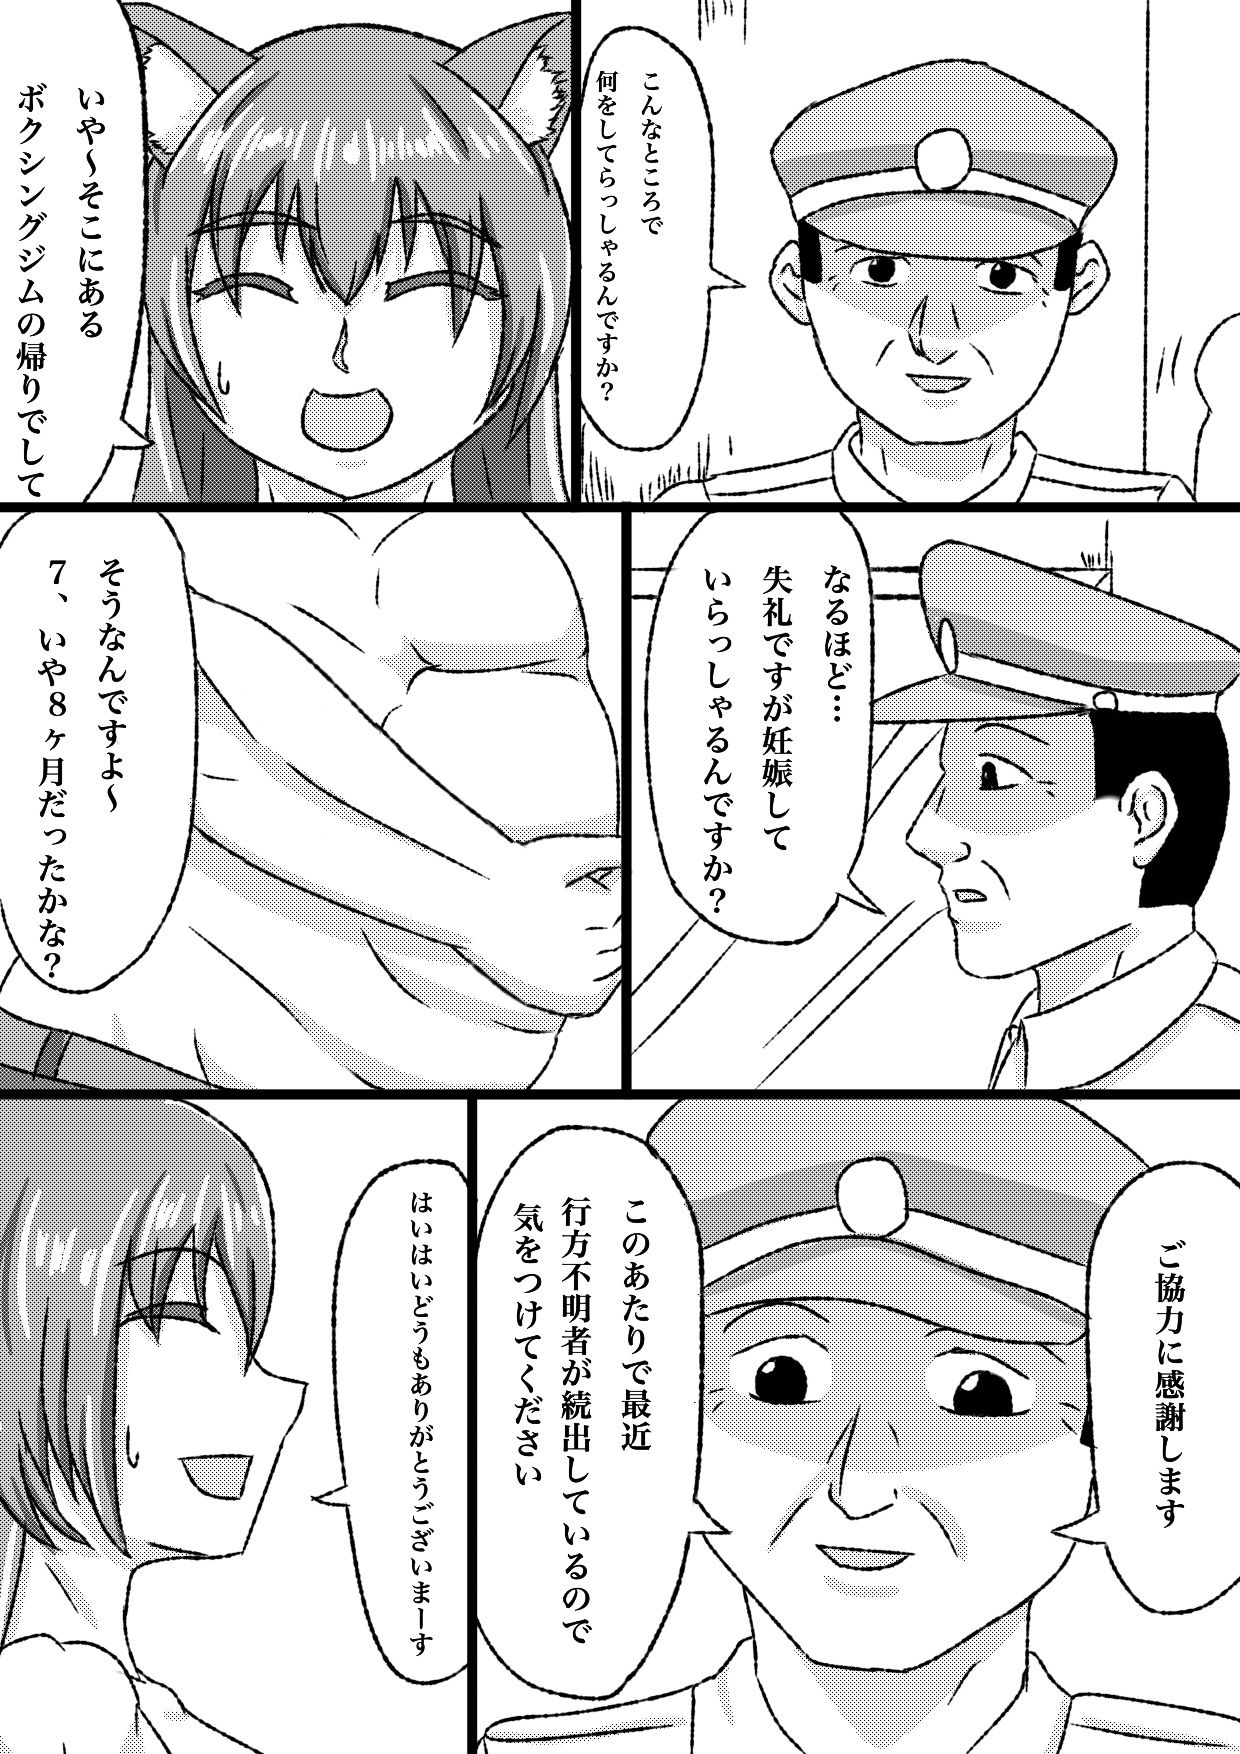 [kuzu] uchi no ko marunomi manga [kuzu] うちの子丸呑み漫画